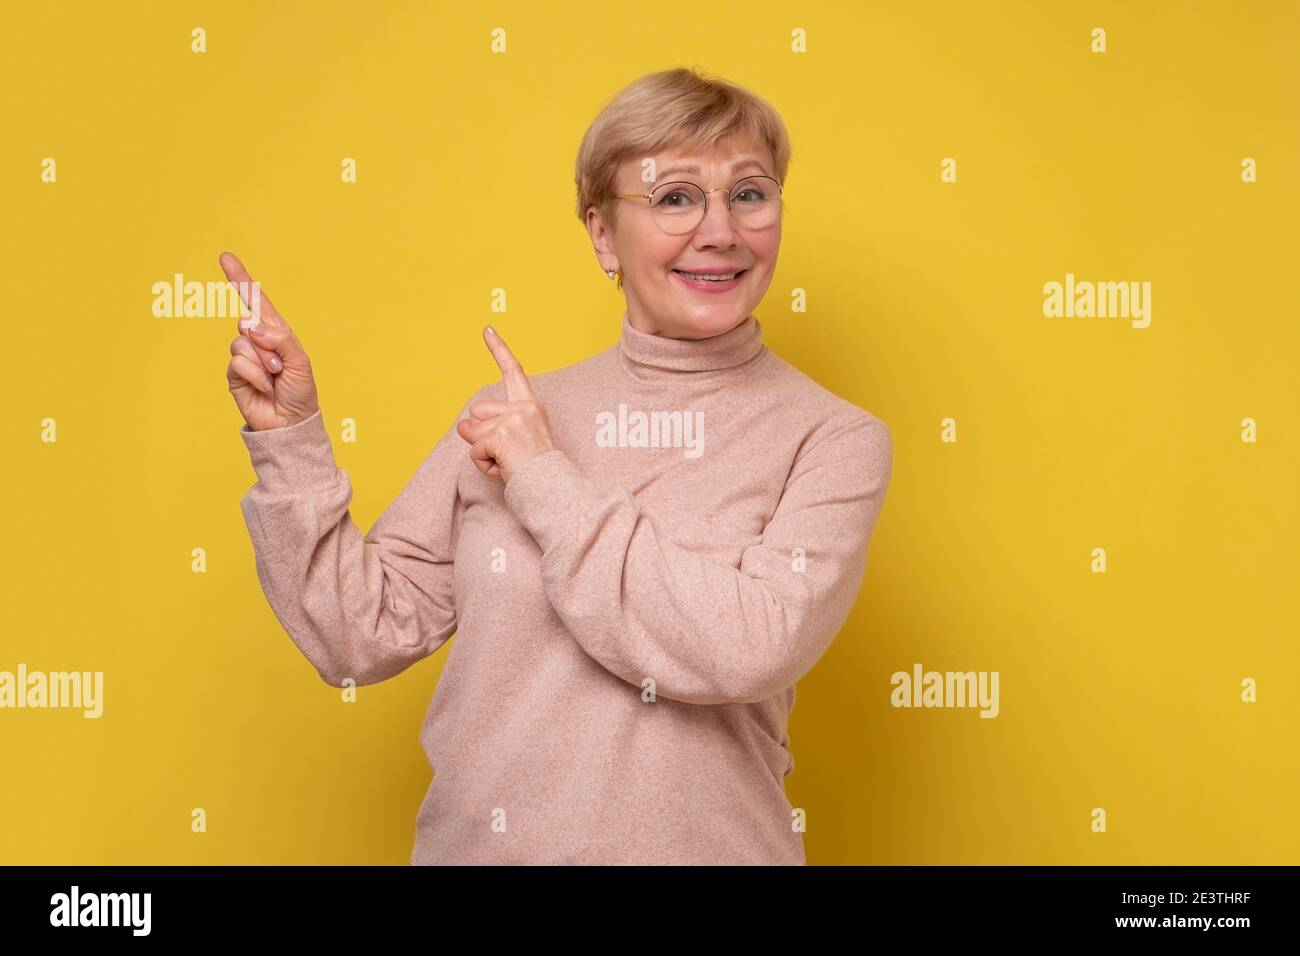 Erstaunt aufgeregt reifen alten Frau zeigt auf Kopie Raum beiseite. Glücklich reife Dame Blick auf Kamera Werbung Produkt. Studioaufnahme Stockfoto